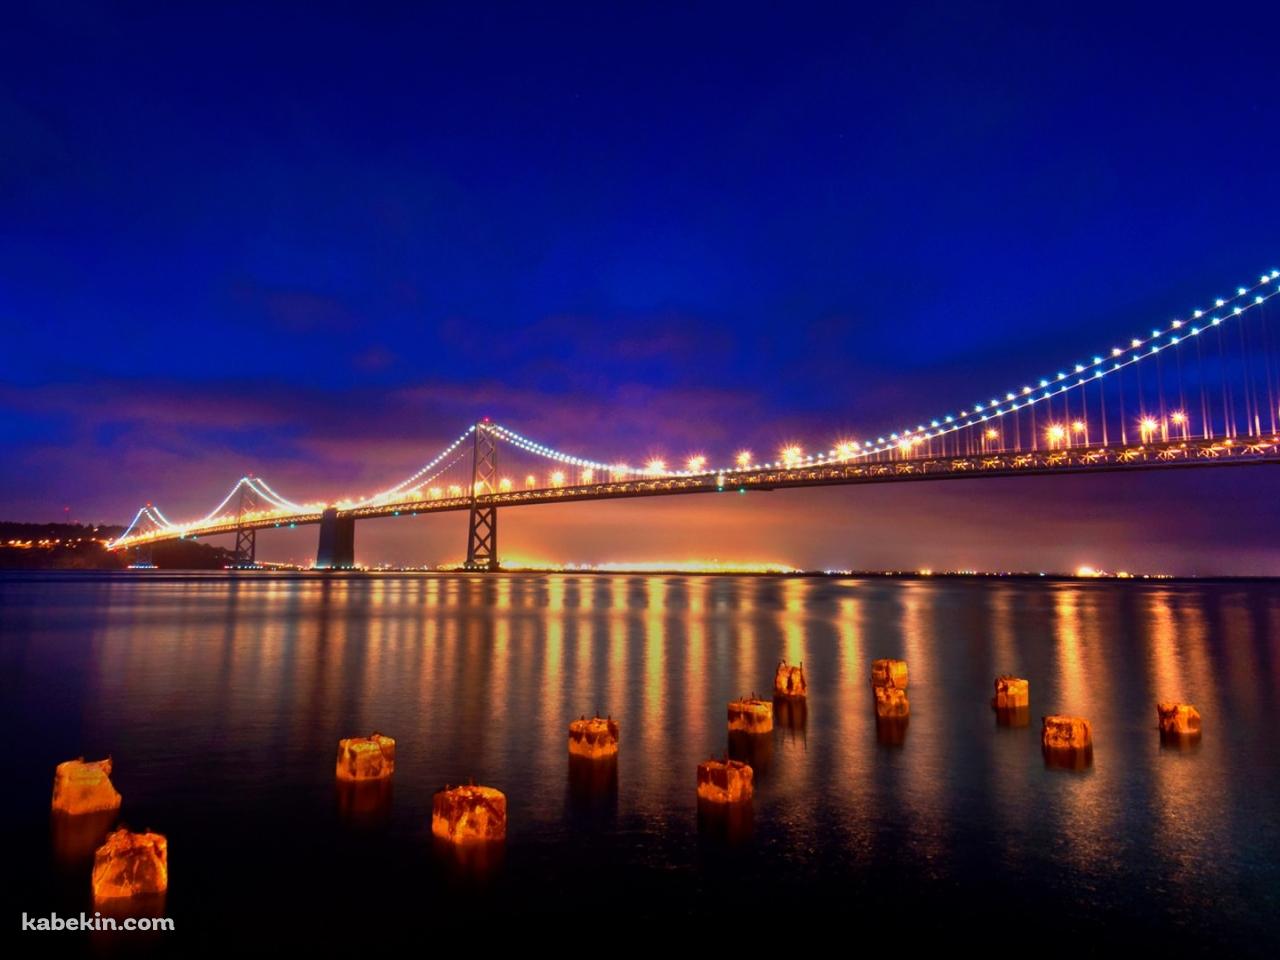 サンフランシスコの大橋の壁紙(1280px x 960px) 高画質 PC・デスクトップ用